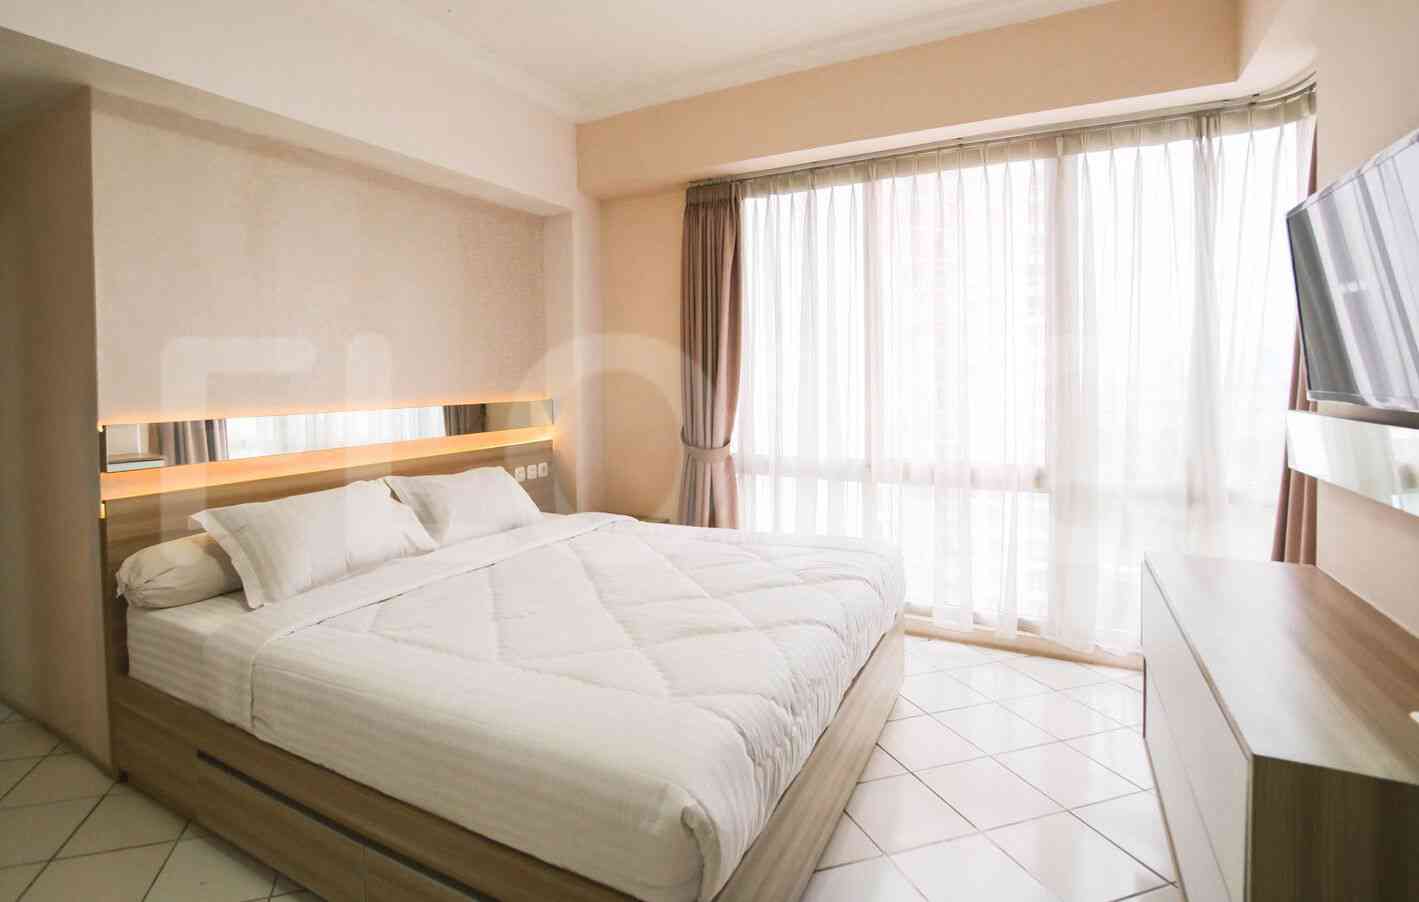 2 Bedroom on 21st Floor for Rent in Puri Casablanca - fte68b 4